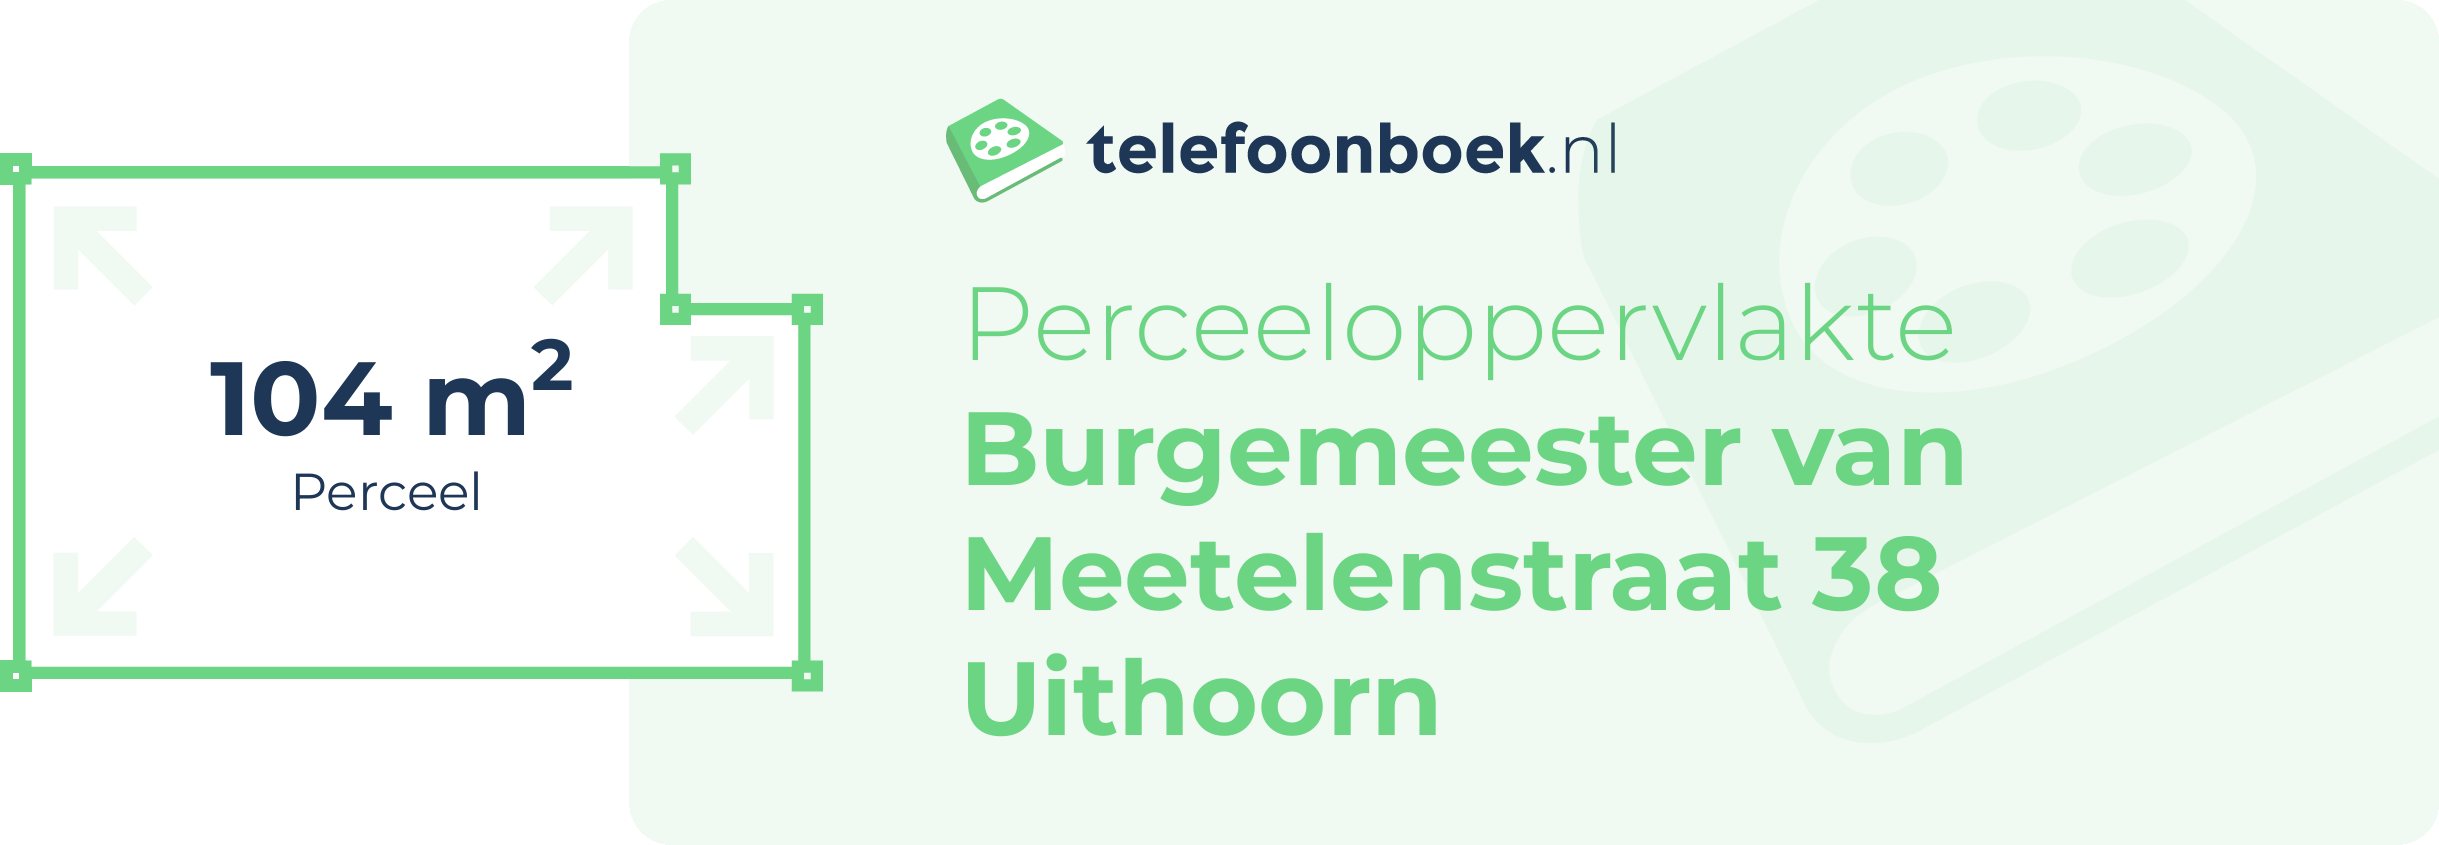 Perceeloppervlakte Burgemeester Van Meetelenstraat 38 Uithoorn